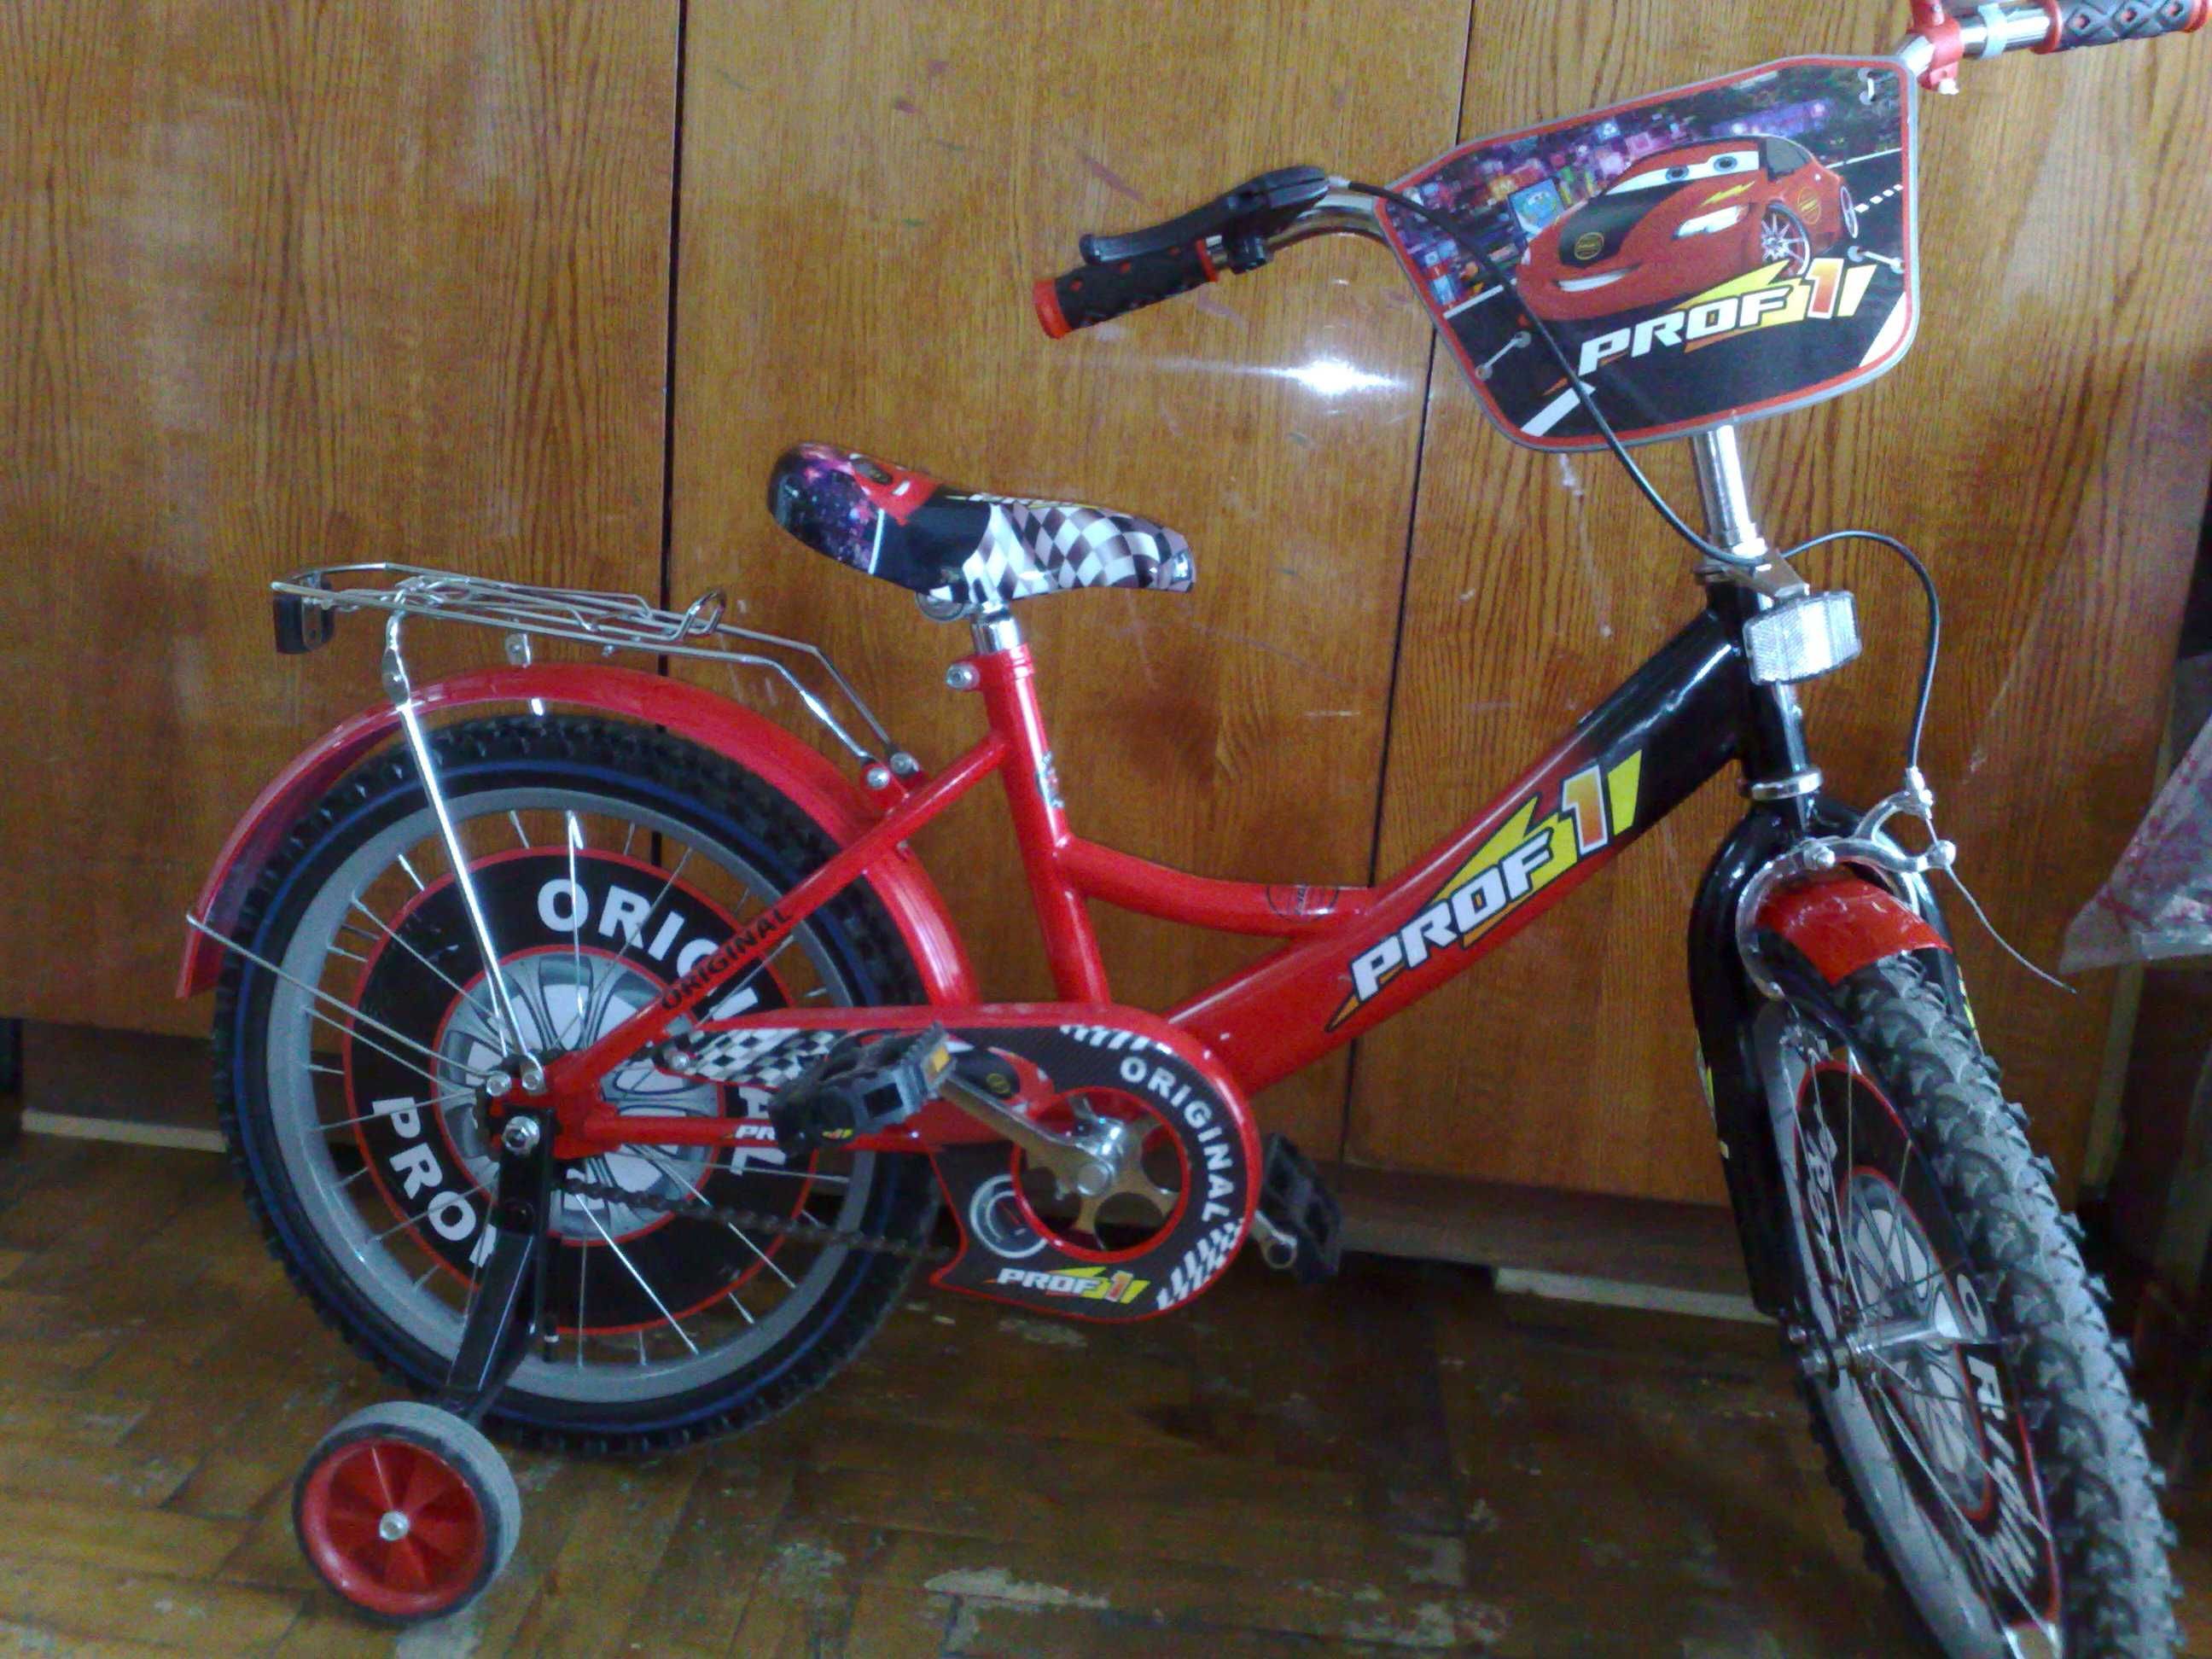 Детский велосипед, красный, 18 дюймов